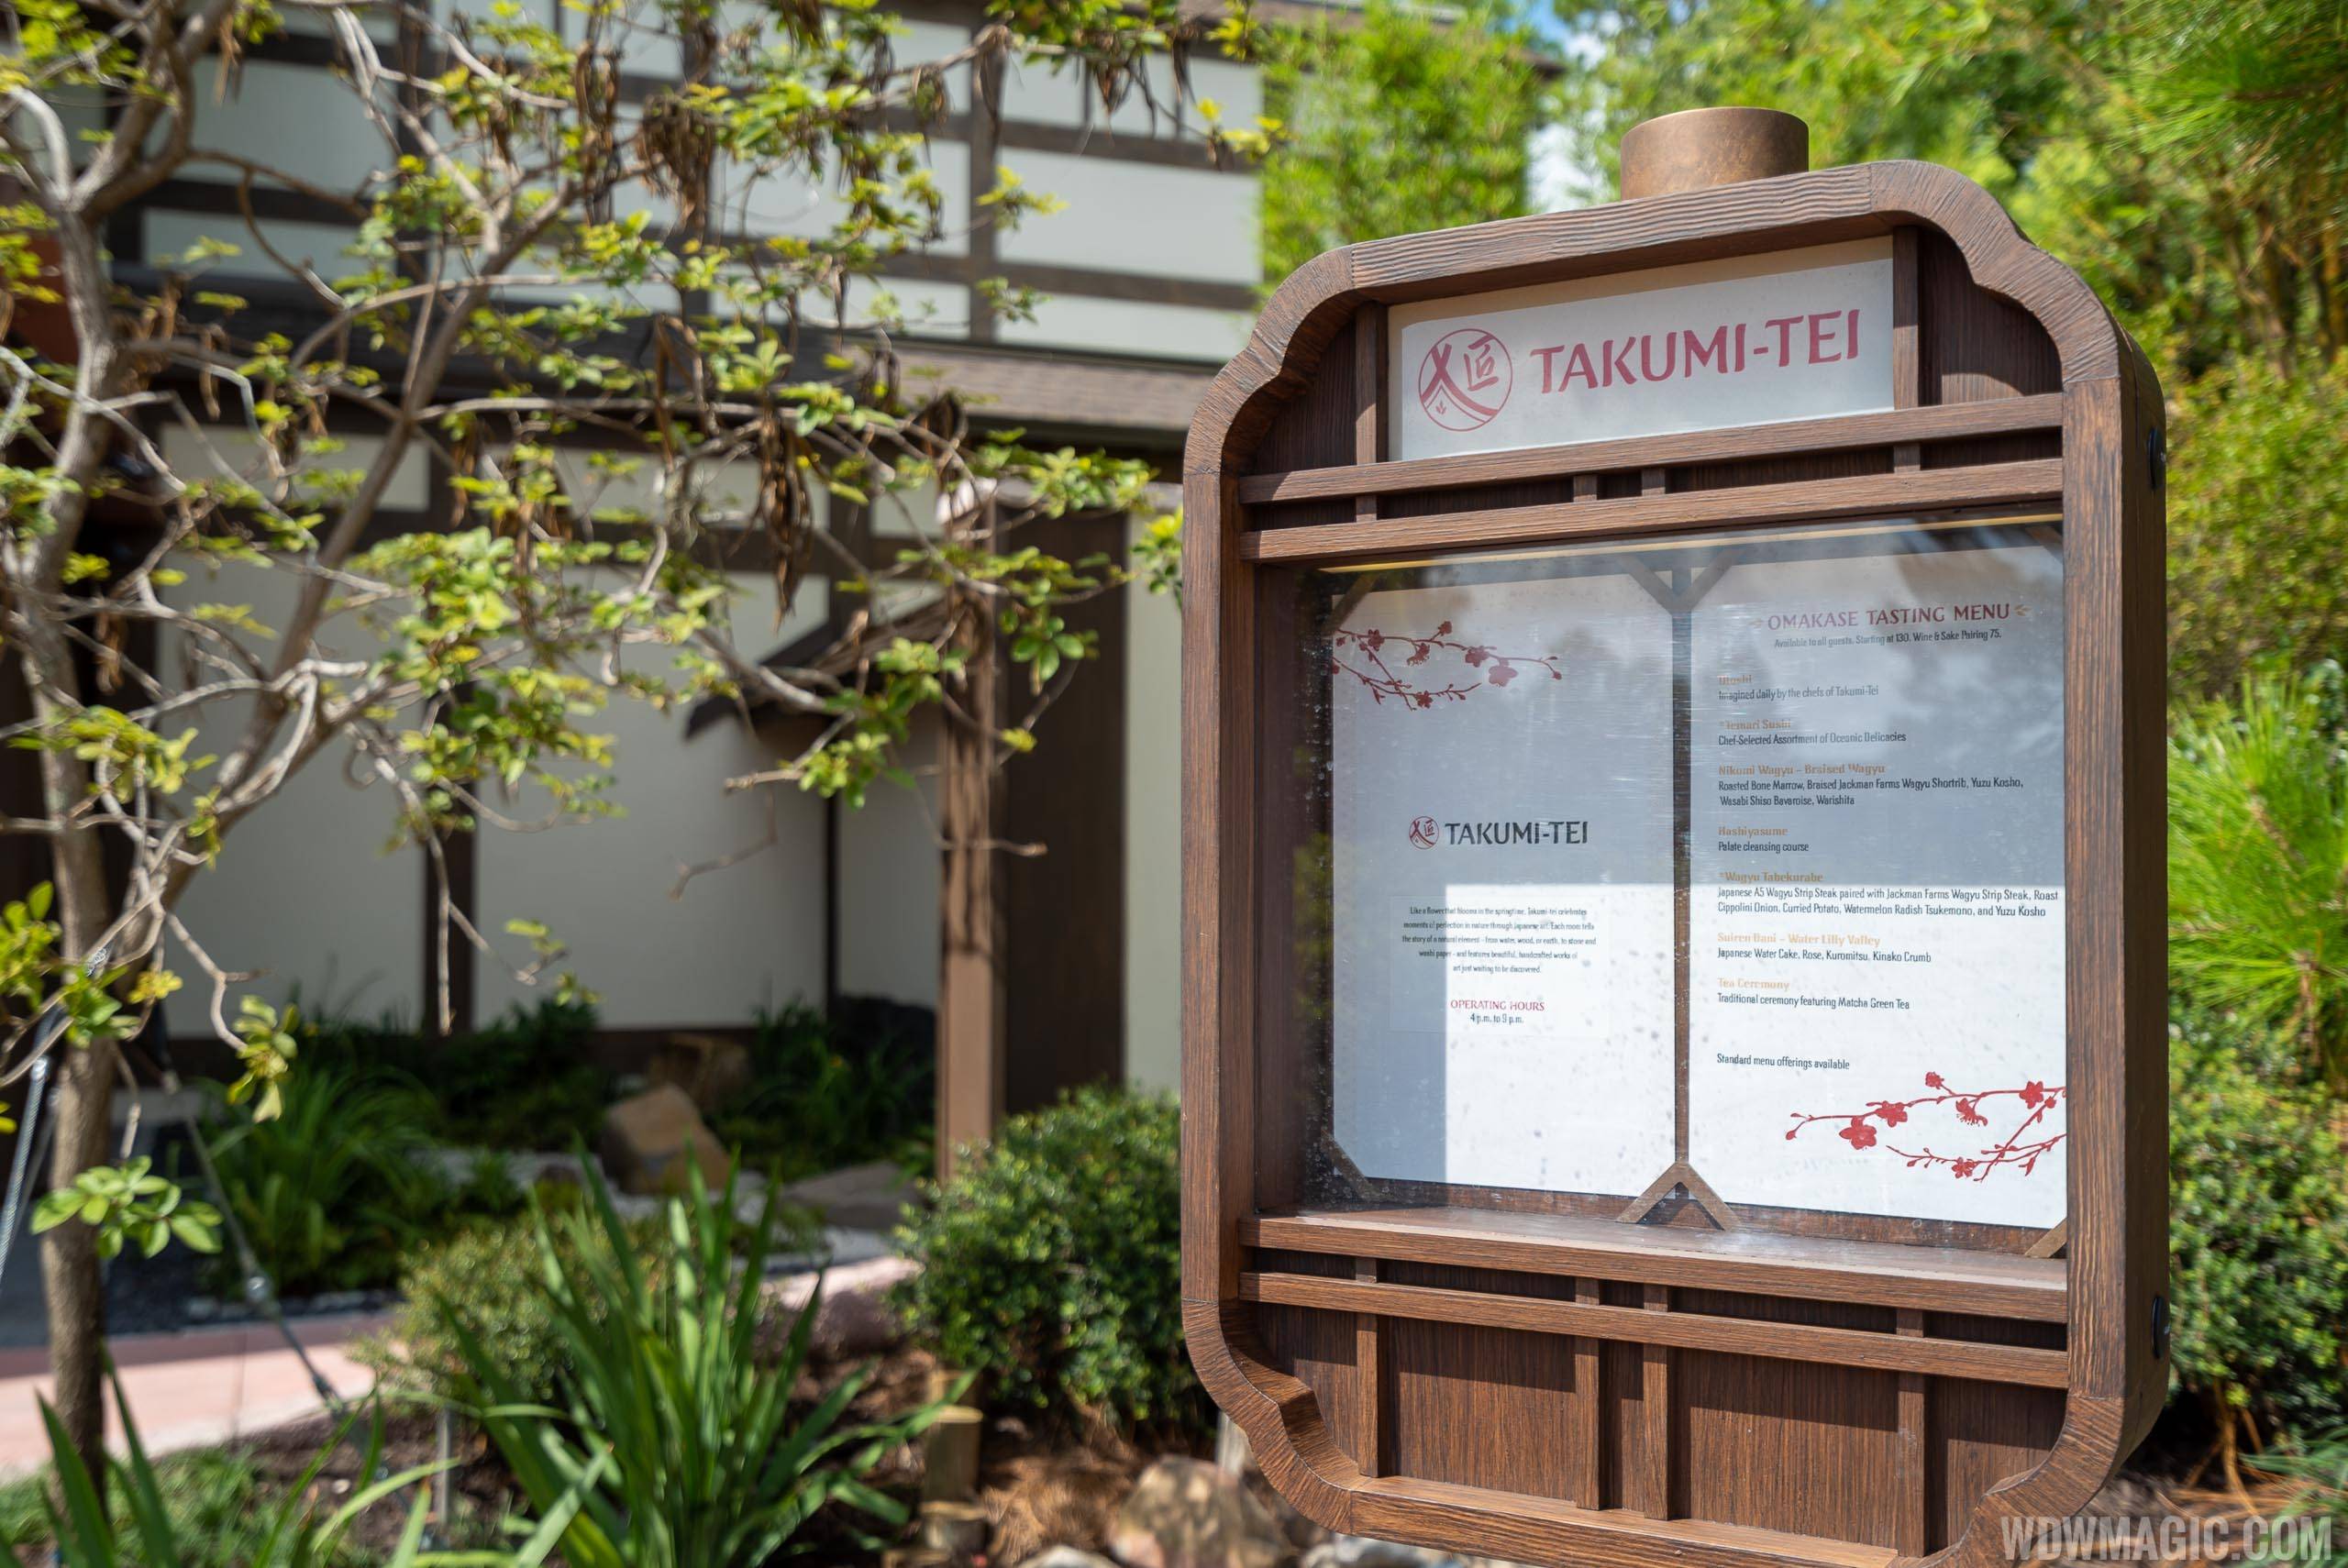 First look at Takumi-Tei's new $250 menu at EPCOT's Japan Pavilion